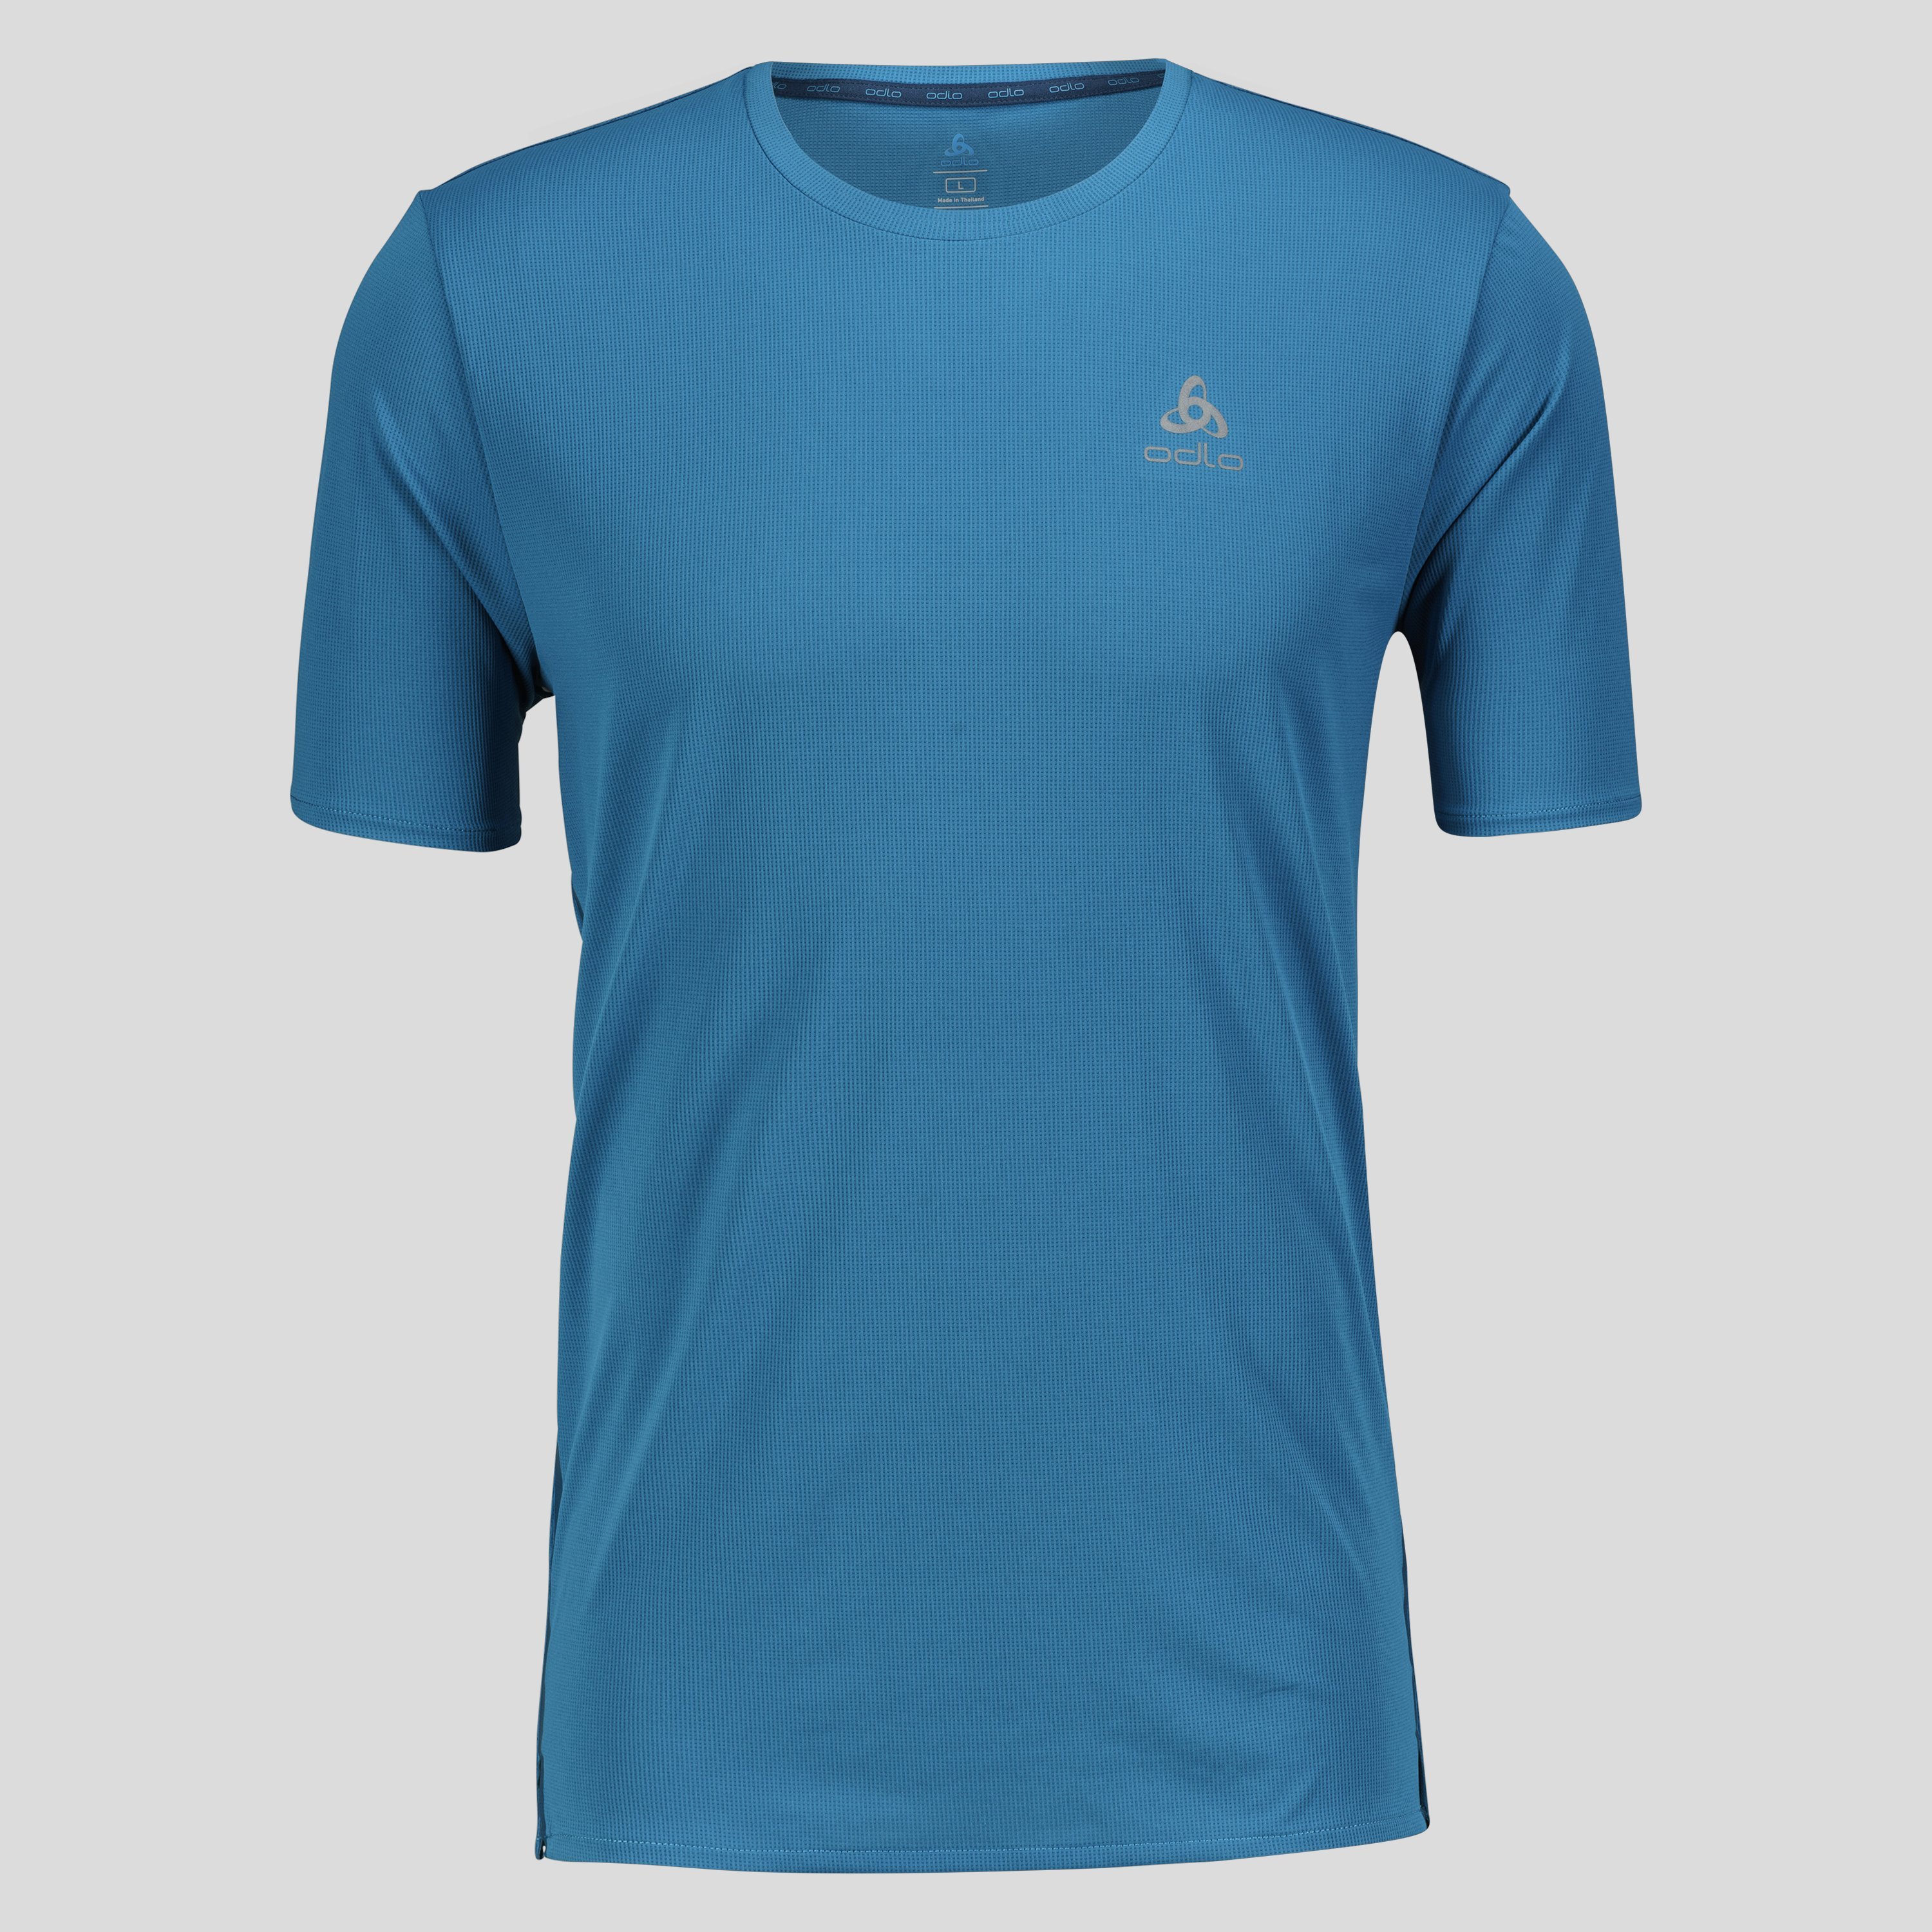 ODLO Zeroweight Chill-Tec T-Shirt für Herren, S, blau